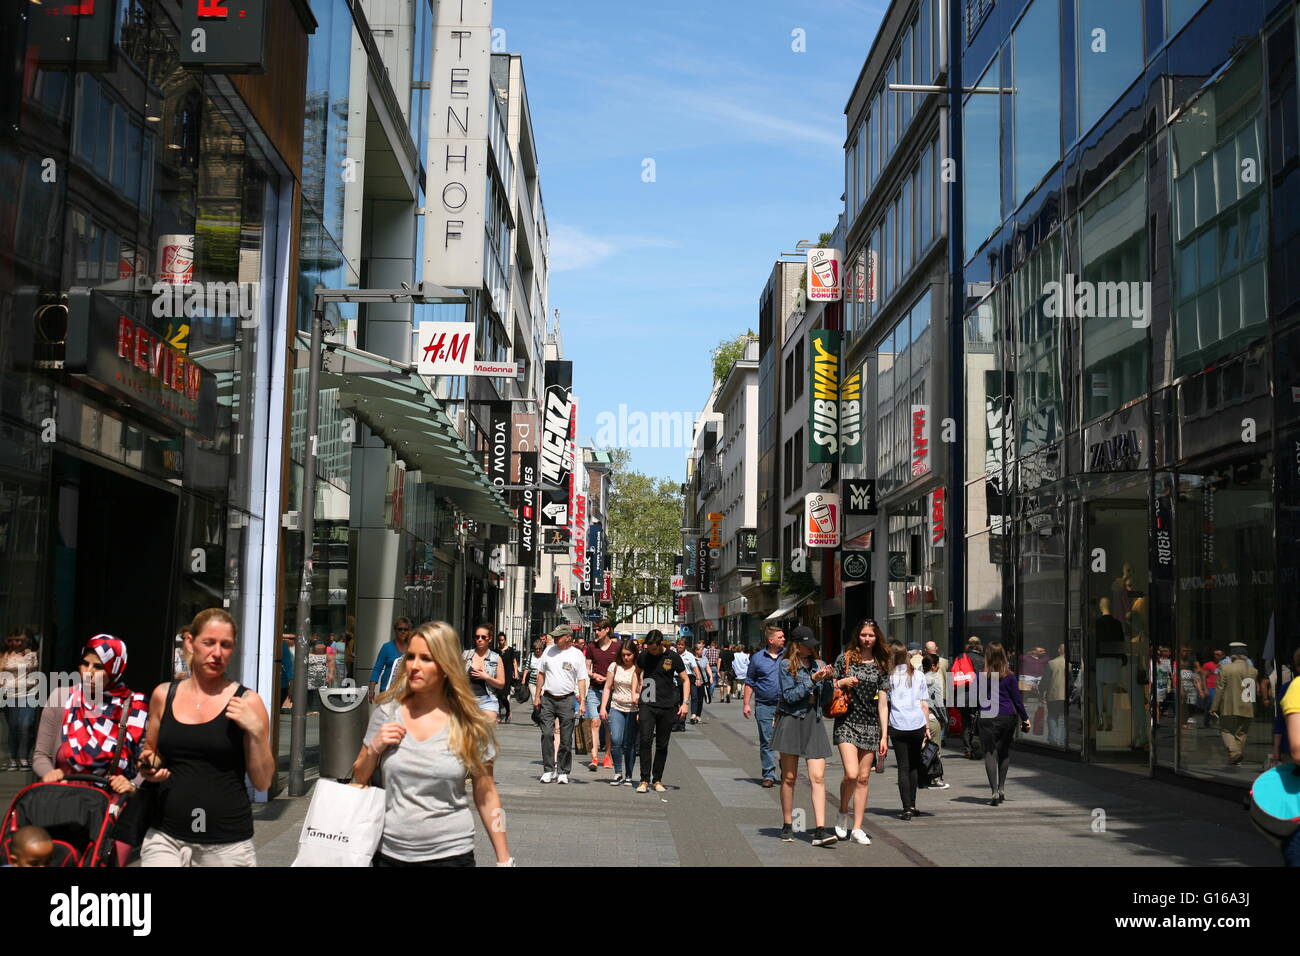 Esaminare la famosa strada dello shopping Hohe Straße a Colonia, in Germania Foto Stock